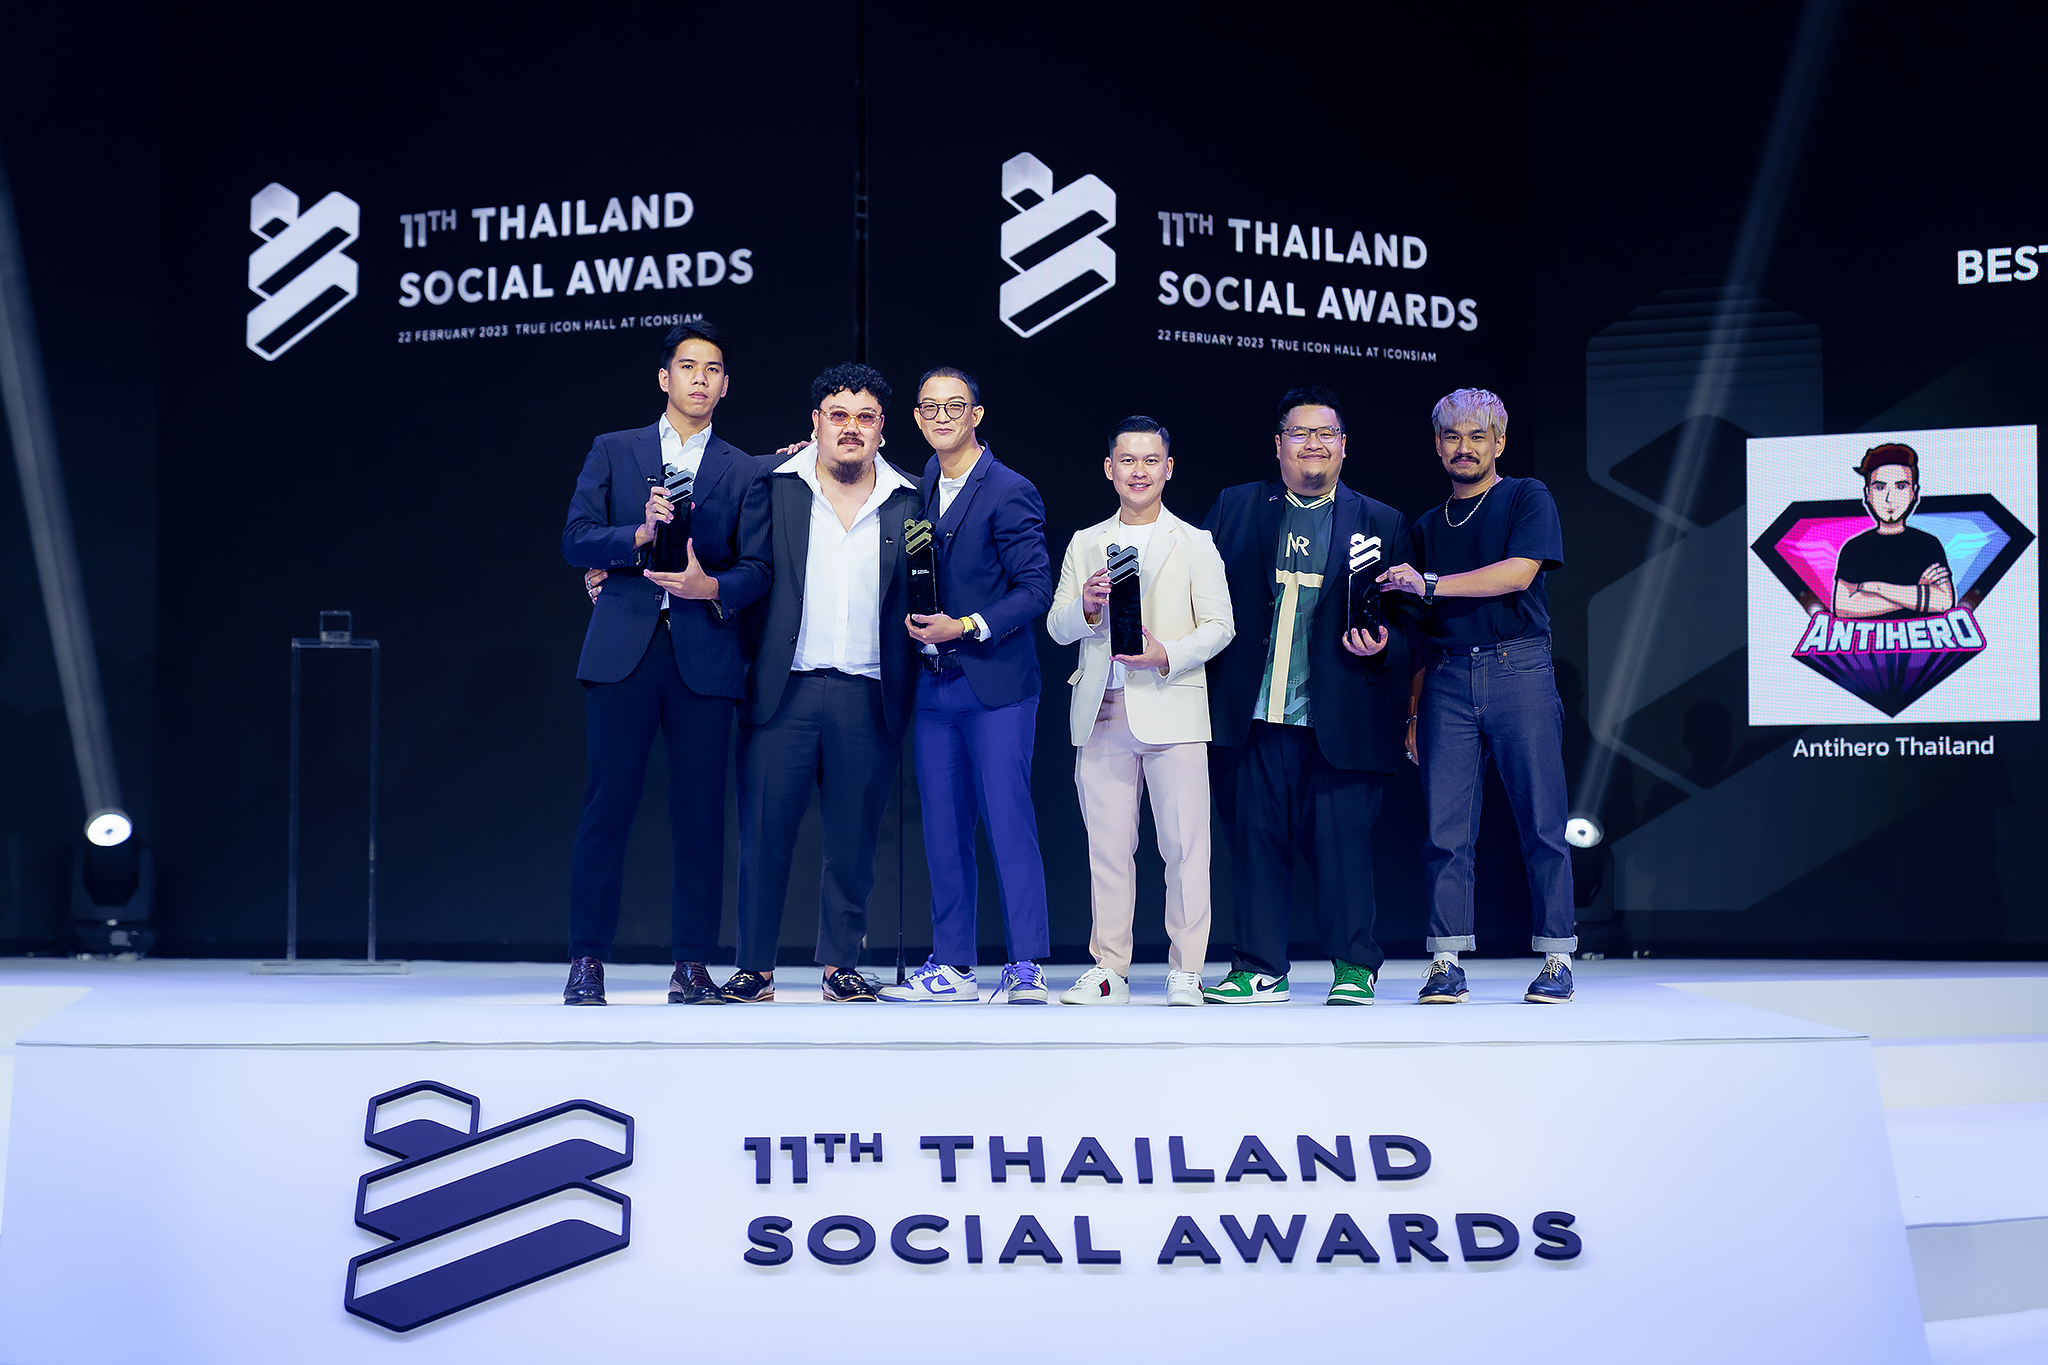 กิต งายย - ไอช่า สองอินฟลูเอนเซอร์สังกัด OSx Network คว้ารางวัลในงาน Thailand Social Awards ครั้งที่ 11